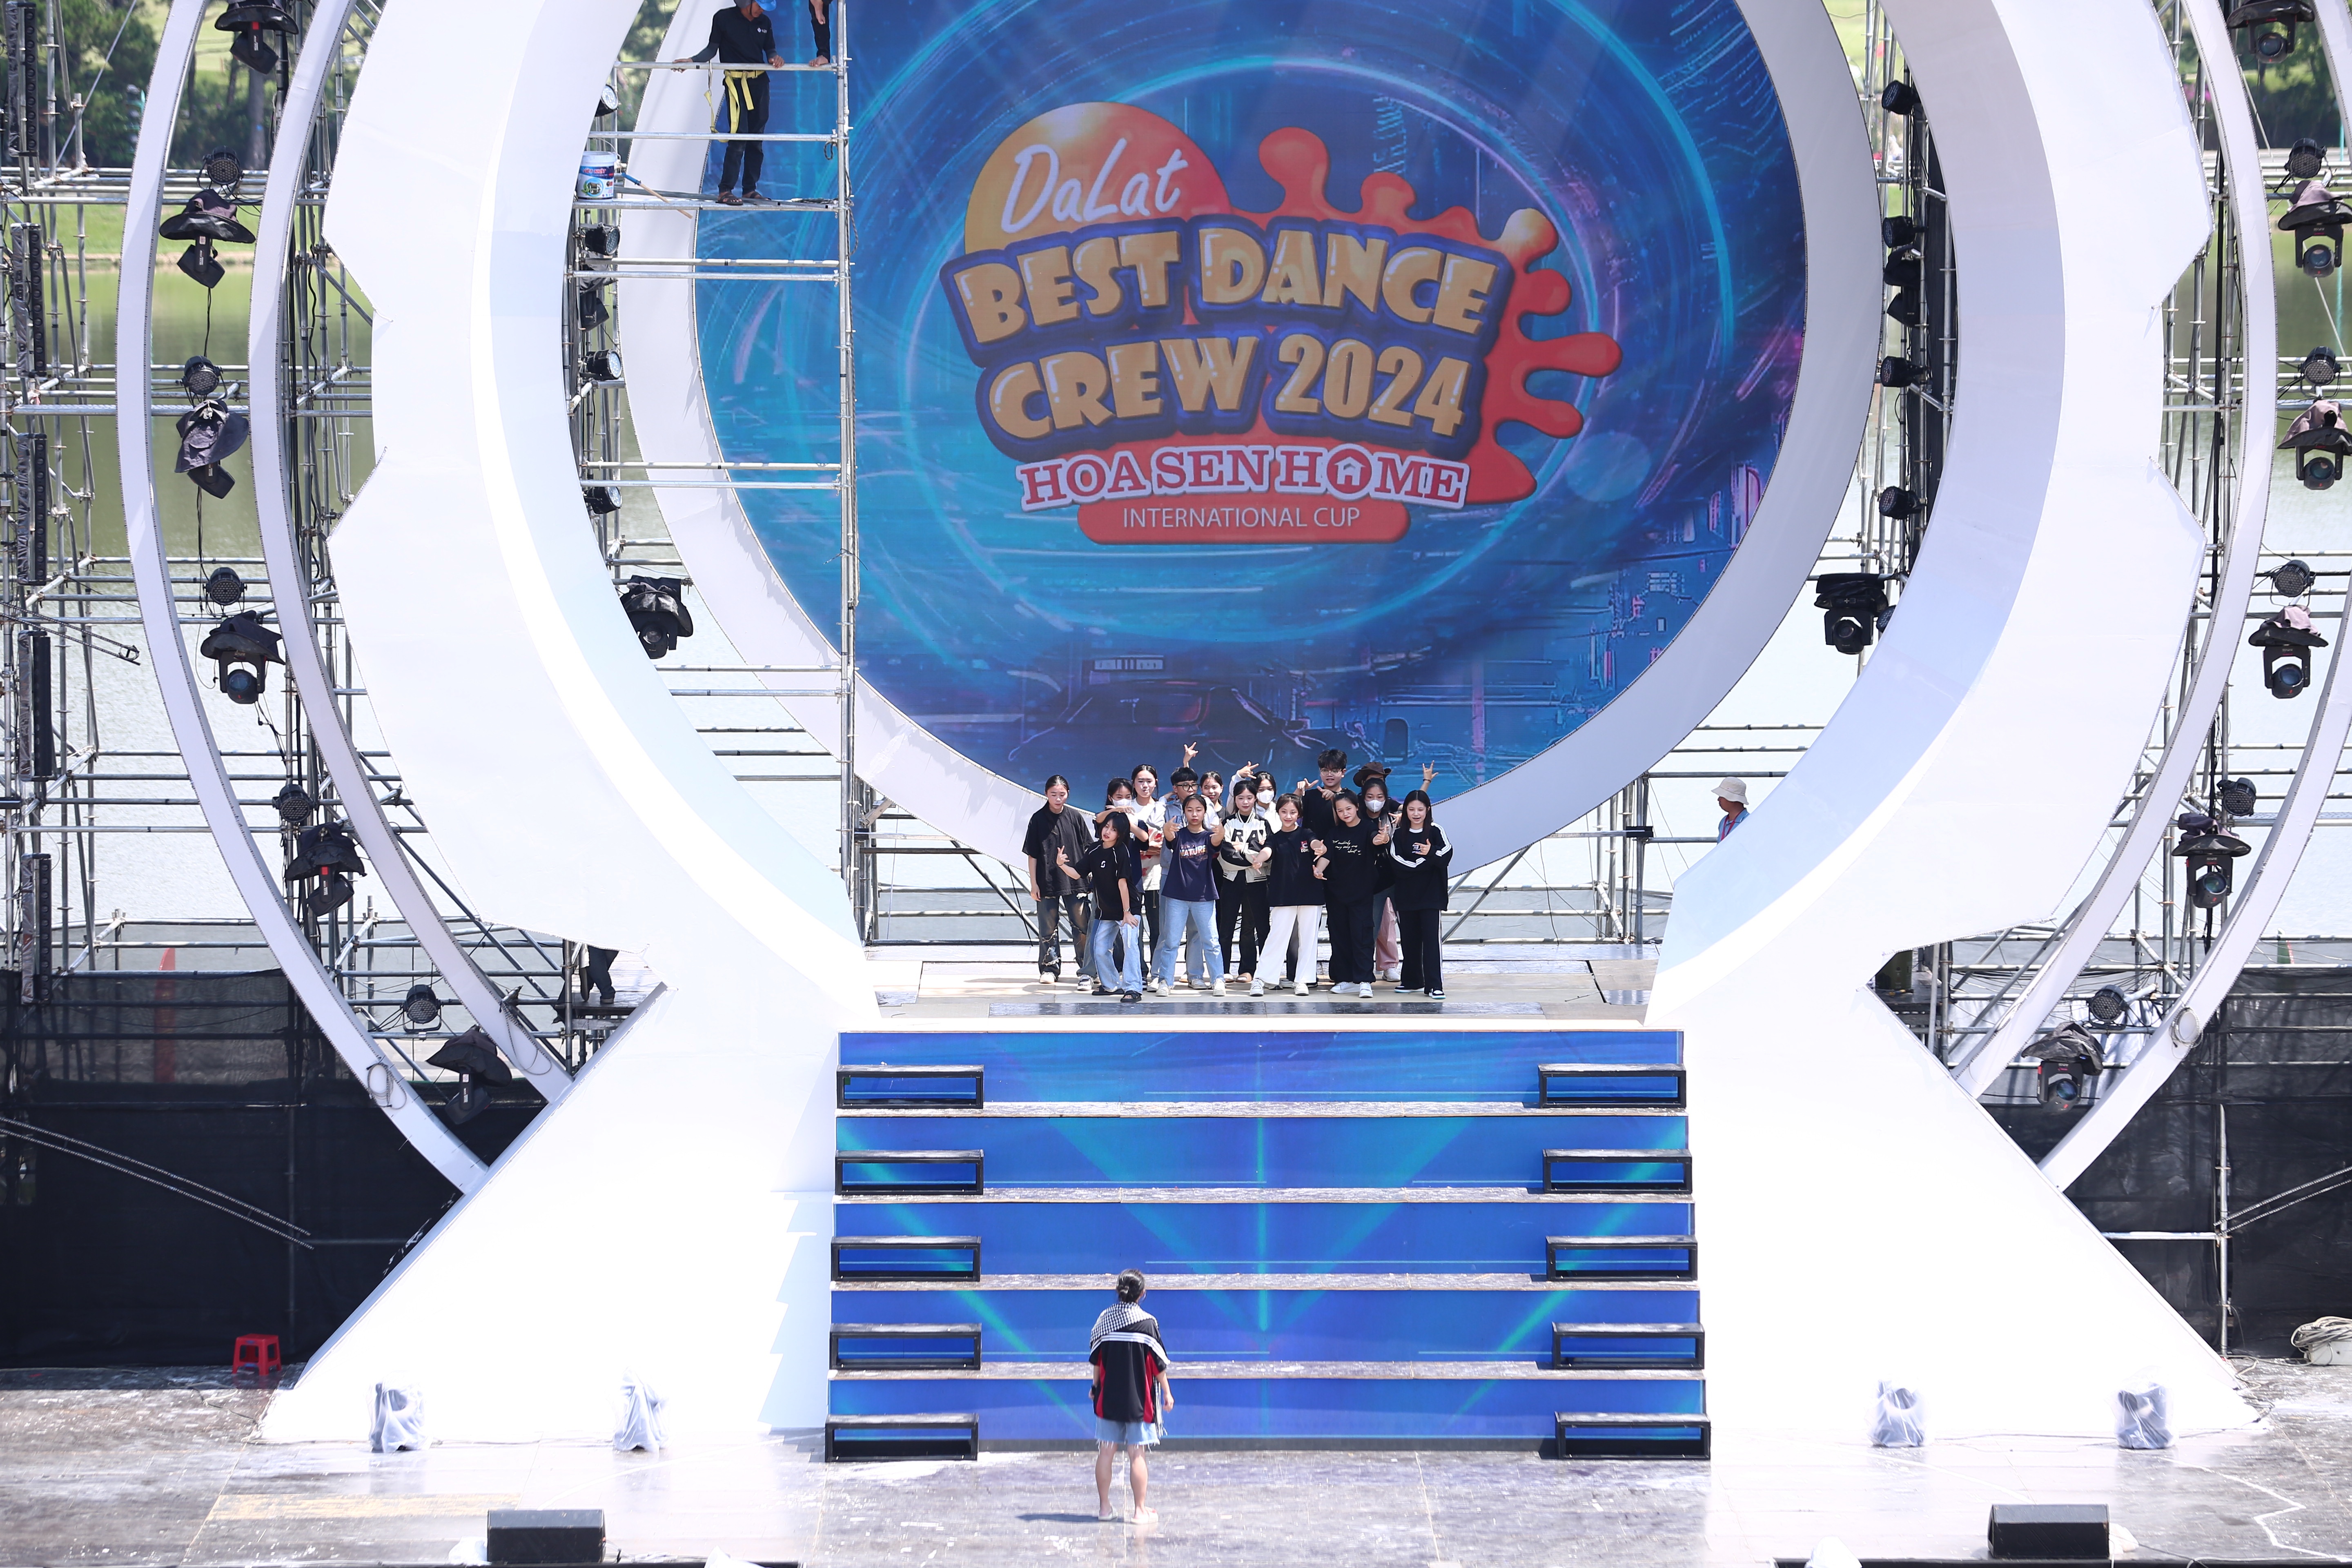 Dalat Best Dance Crew 2024 “gây choáng” với sân khấu cực khủng